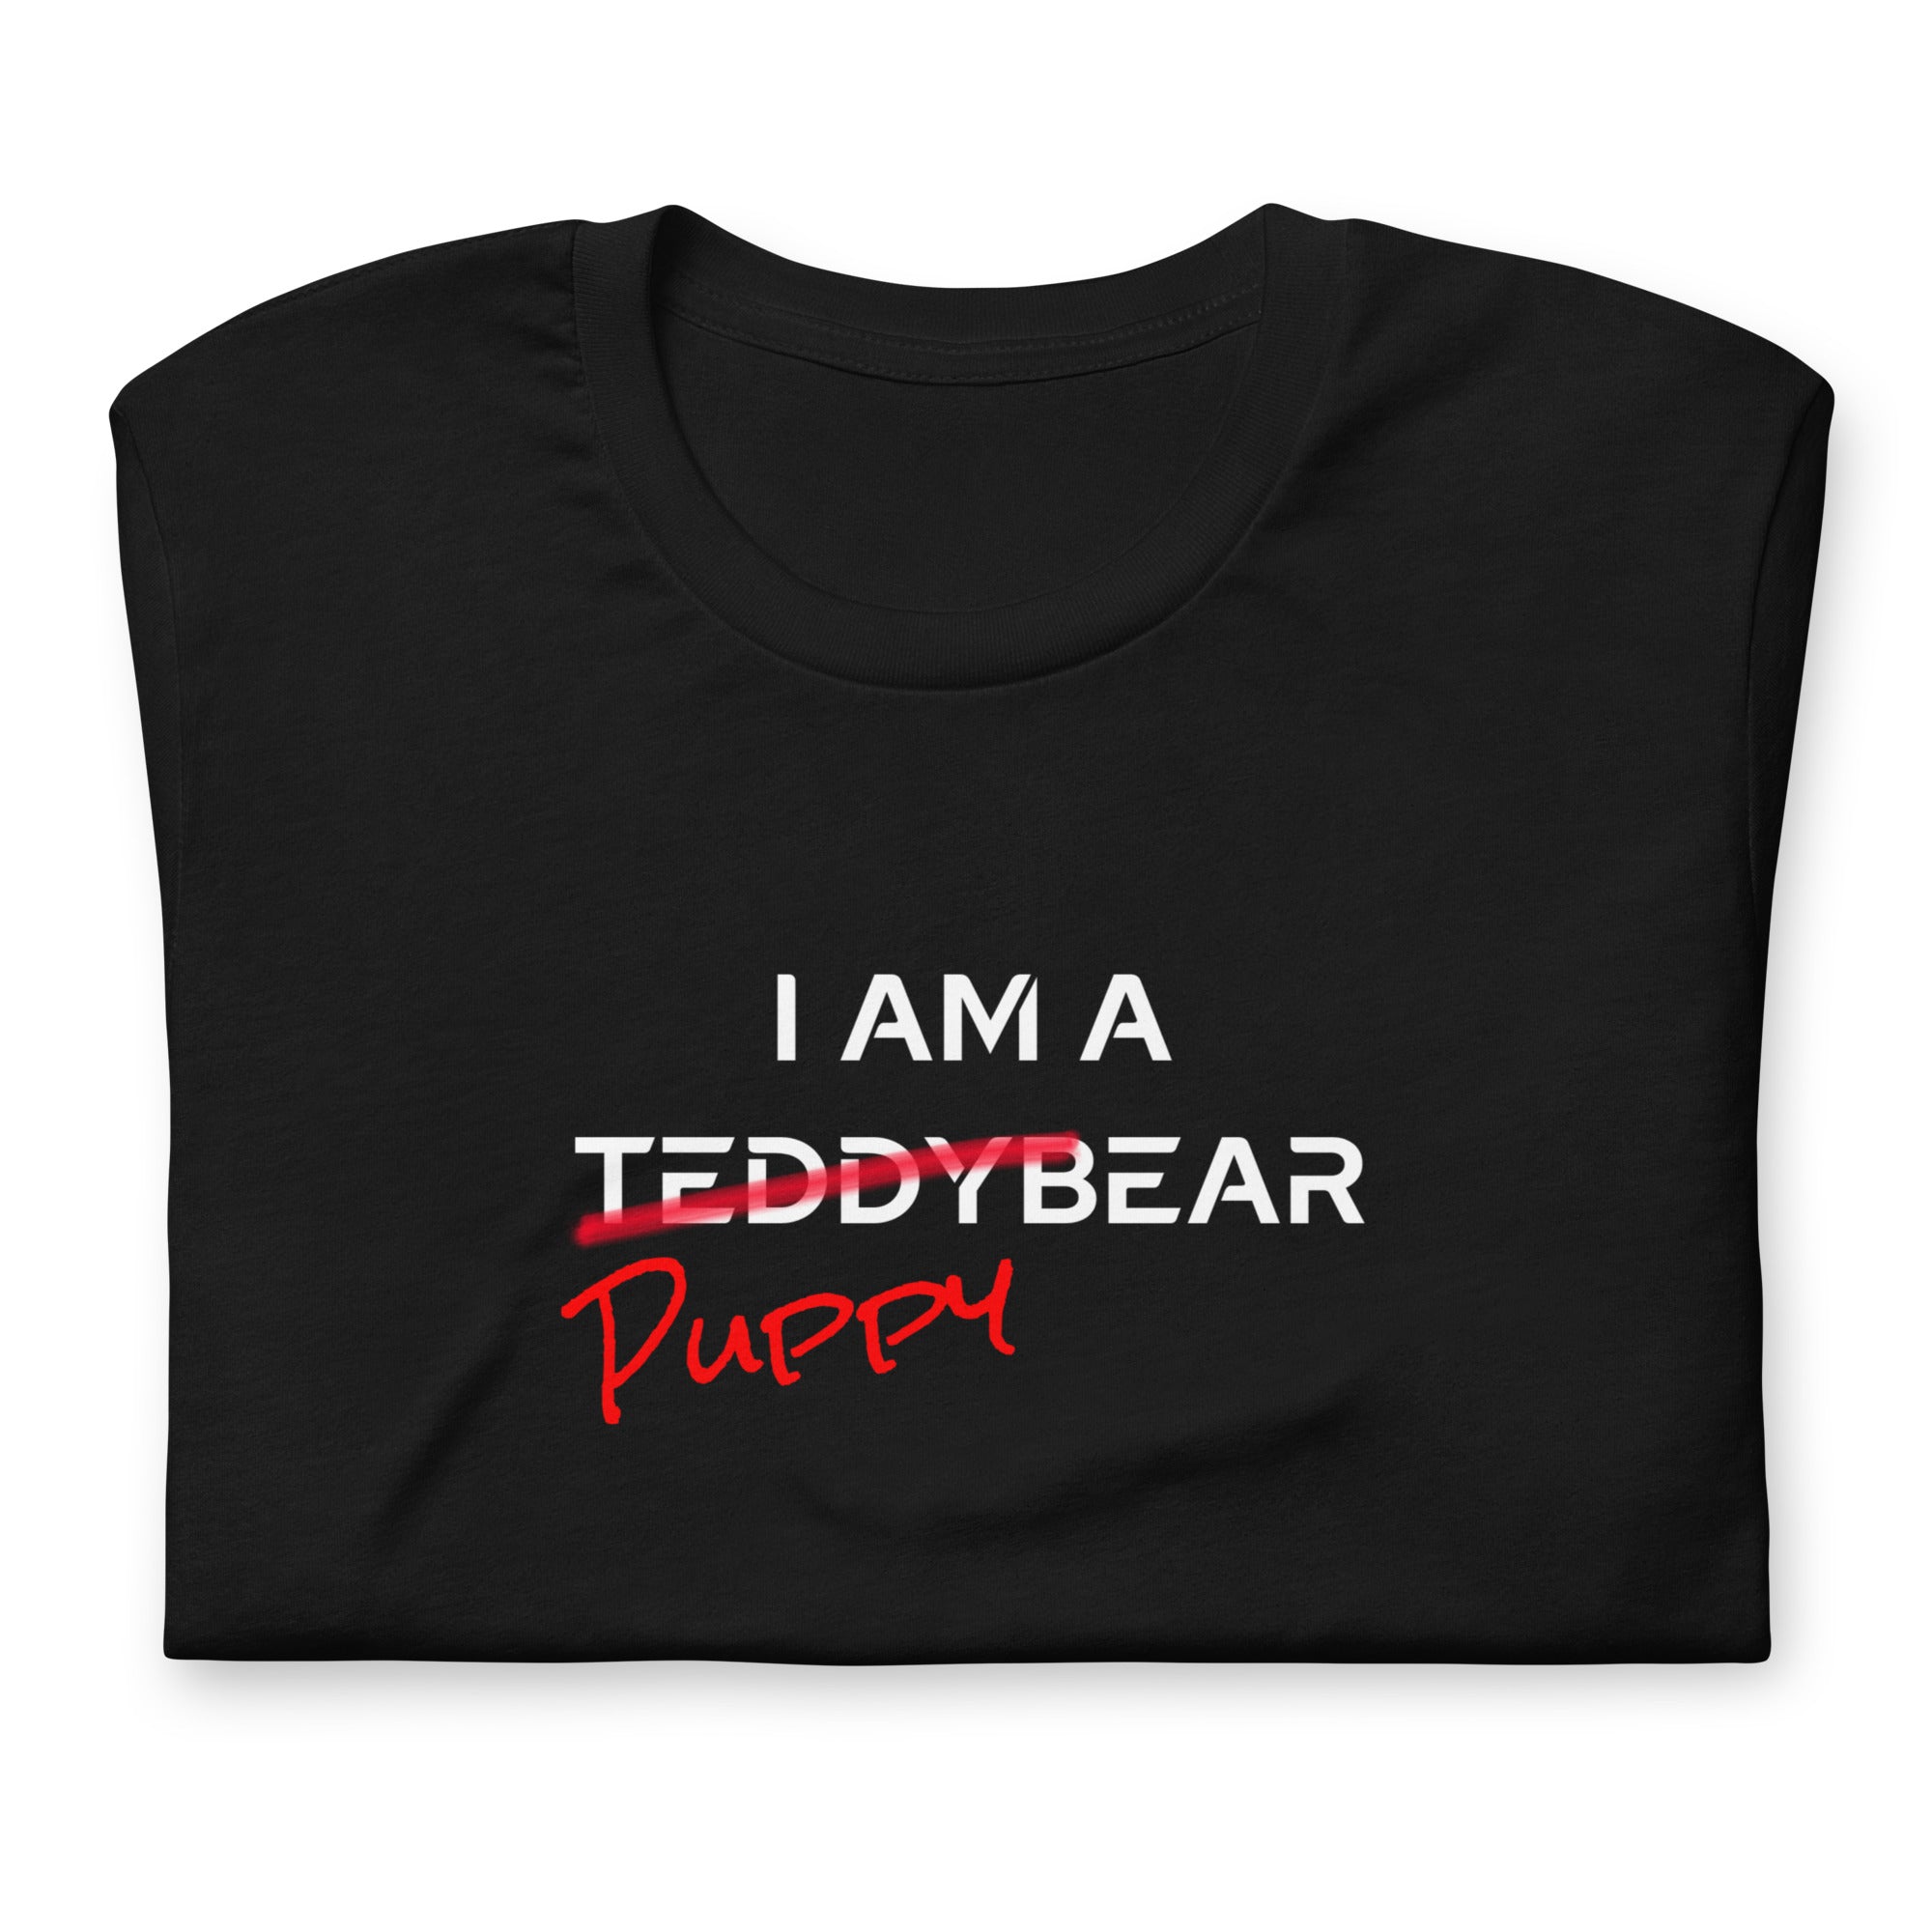 I am a PuppyBear / T-Shirt